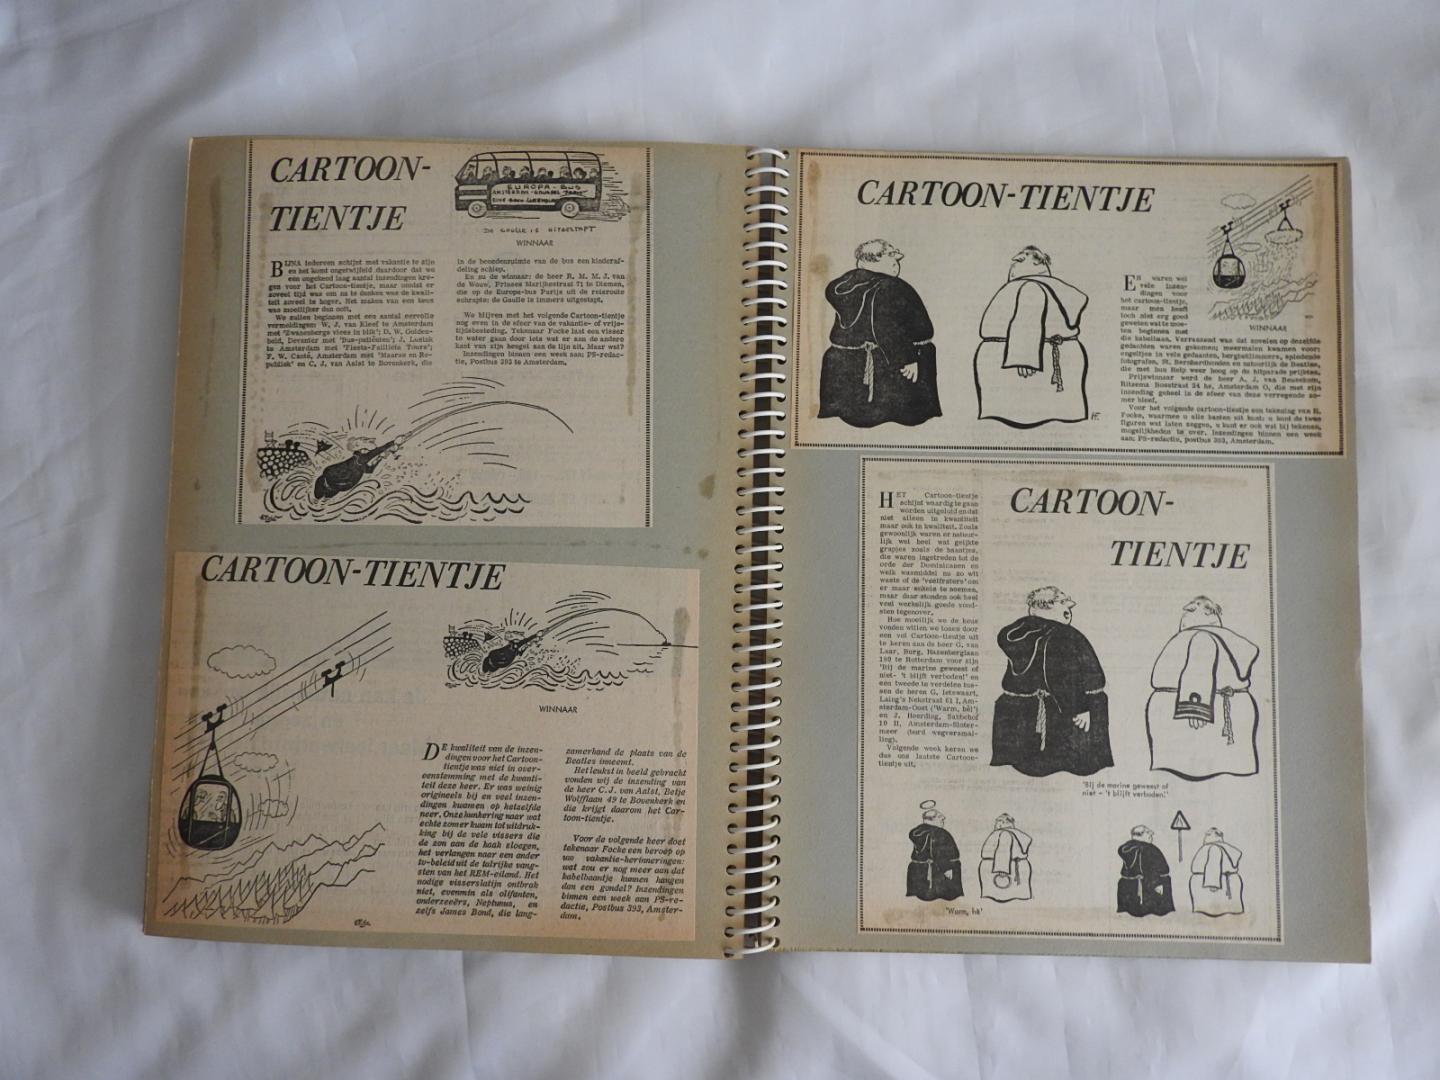 Yrrah, Harry Lammertink en anderen - Yrrah selectie cartoons in Verzamelbanden. Prive verzameld. in Ringbanden vanaf 1958 verschillende auteurs